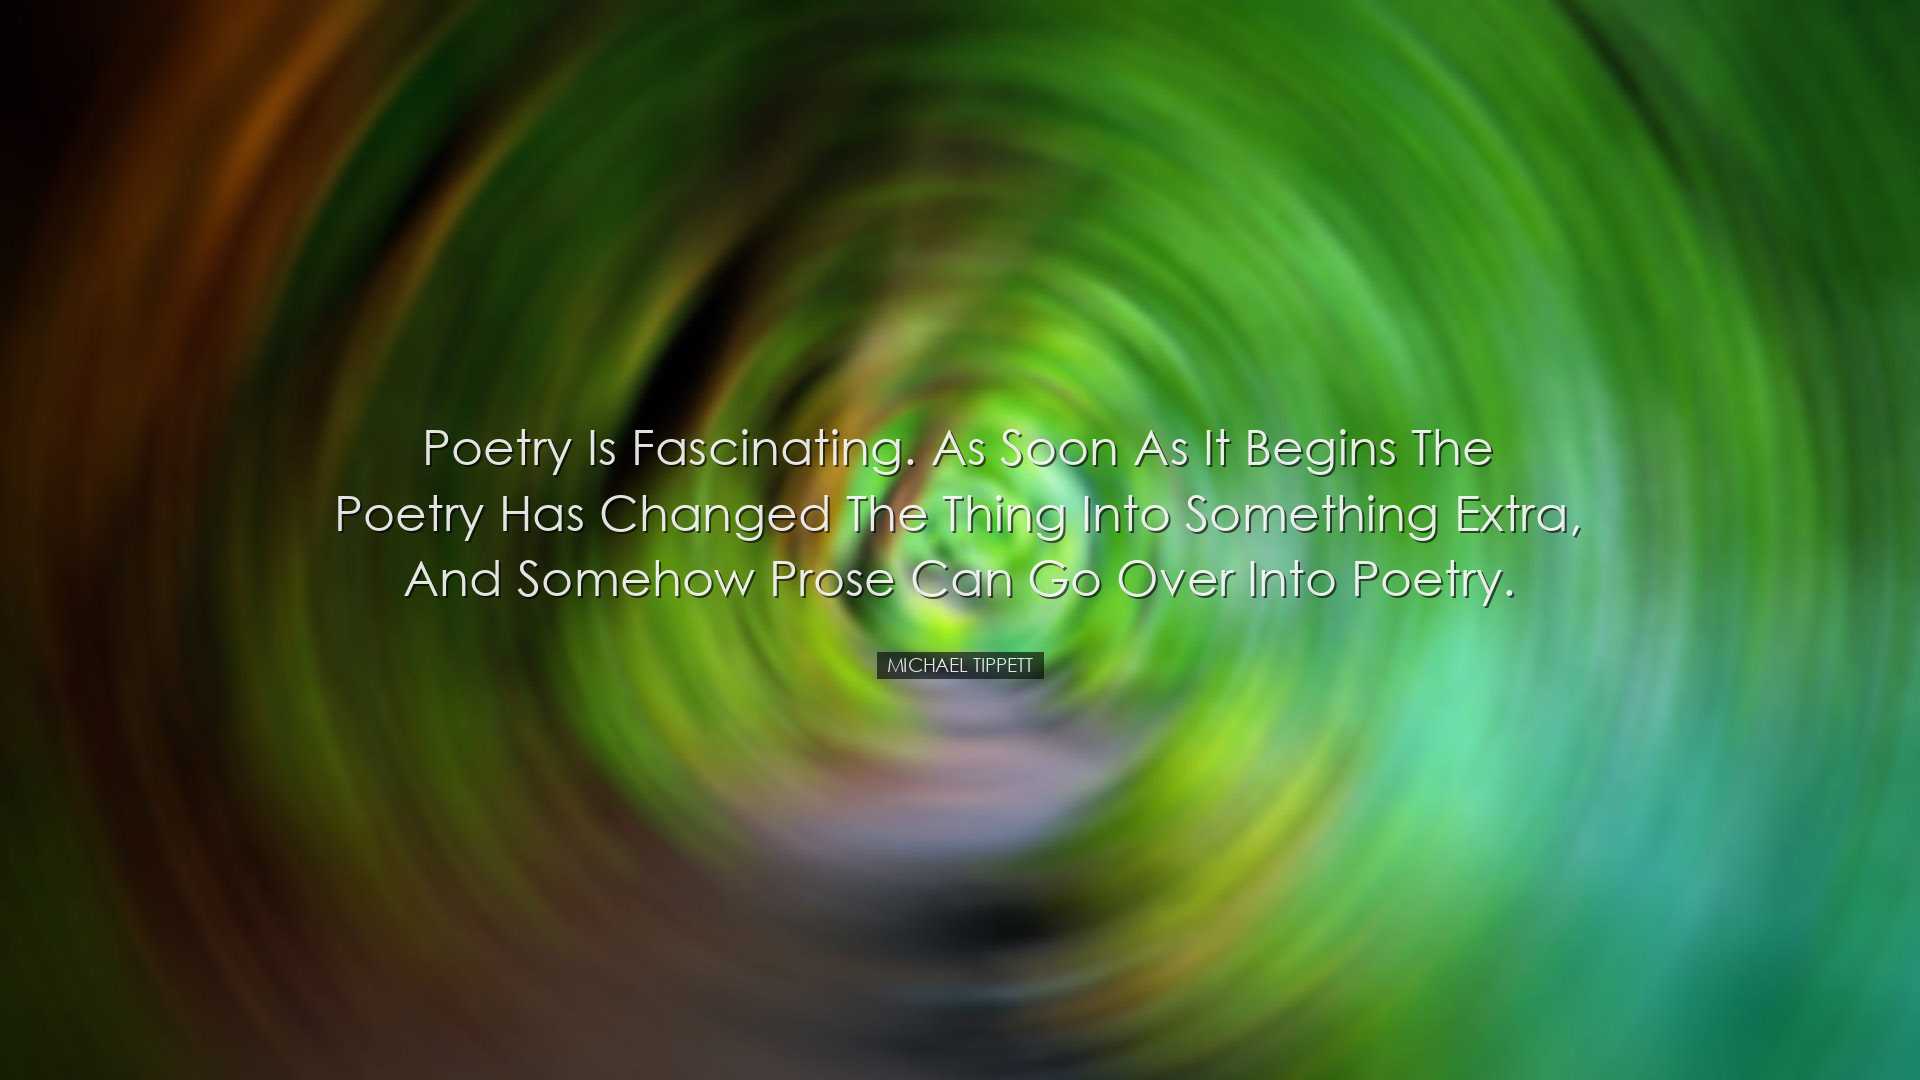 Poetry is fascinating. As soon as it begins the poetry has changed